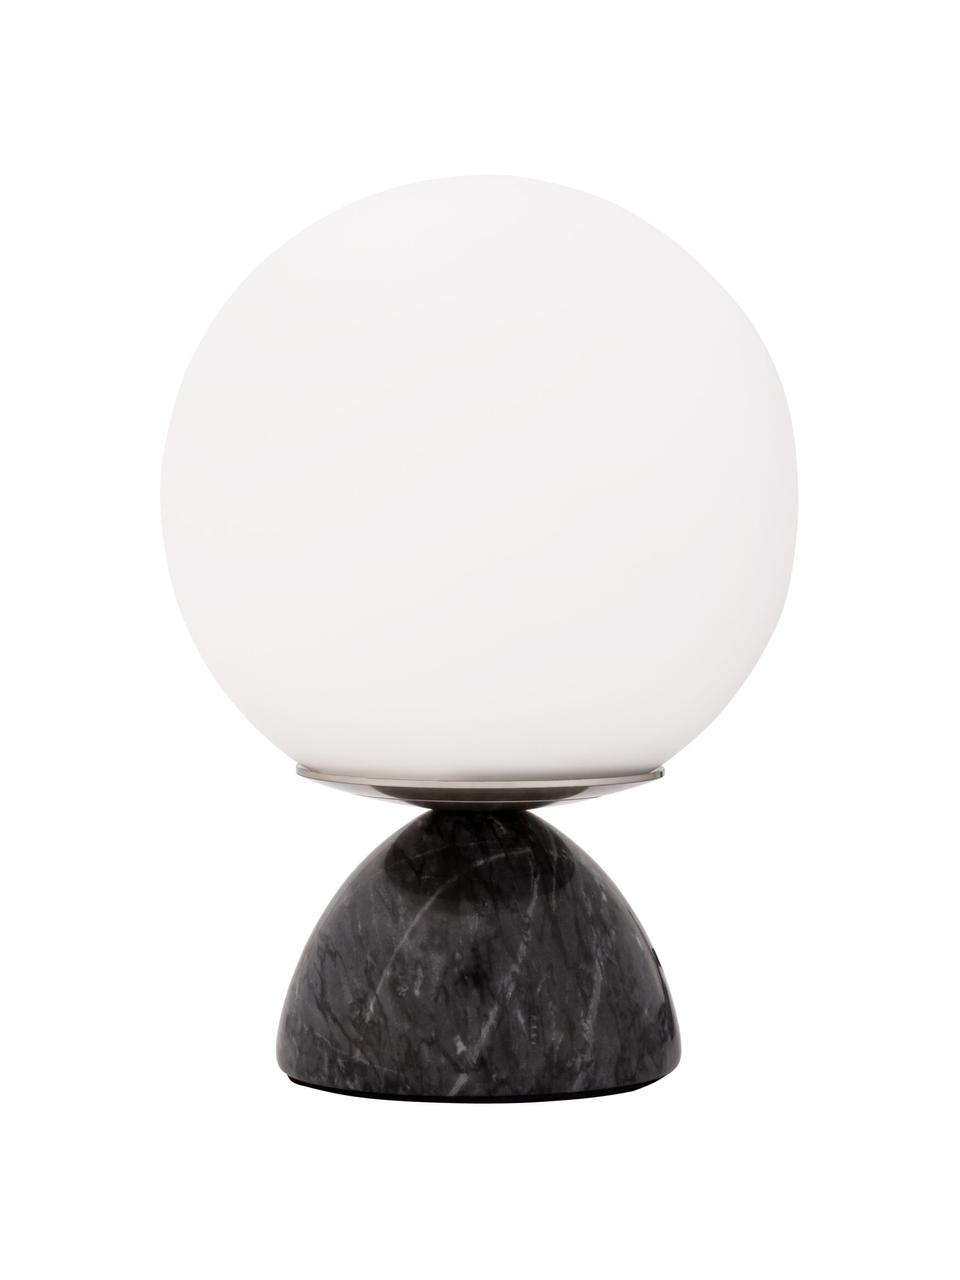 Kleine Tischlampe Shining Pearl mit Marmorfuß, Lampenschirm: Opalglas, Lampenfuß: Marmor, Schwarz, Weiß, Ø 15 x H 21 cm